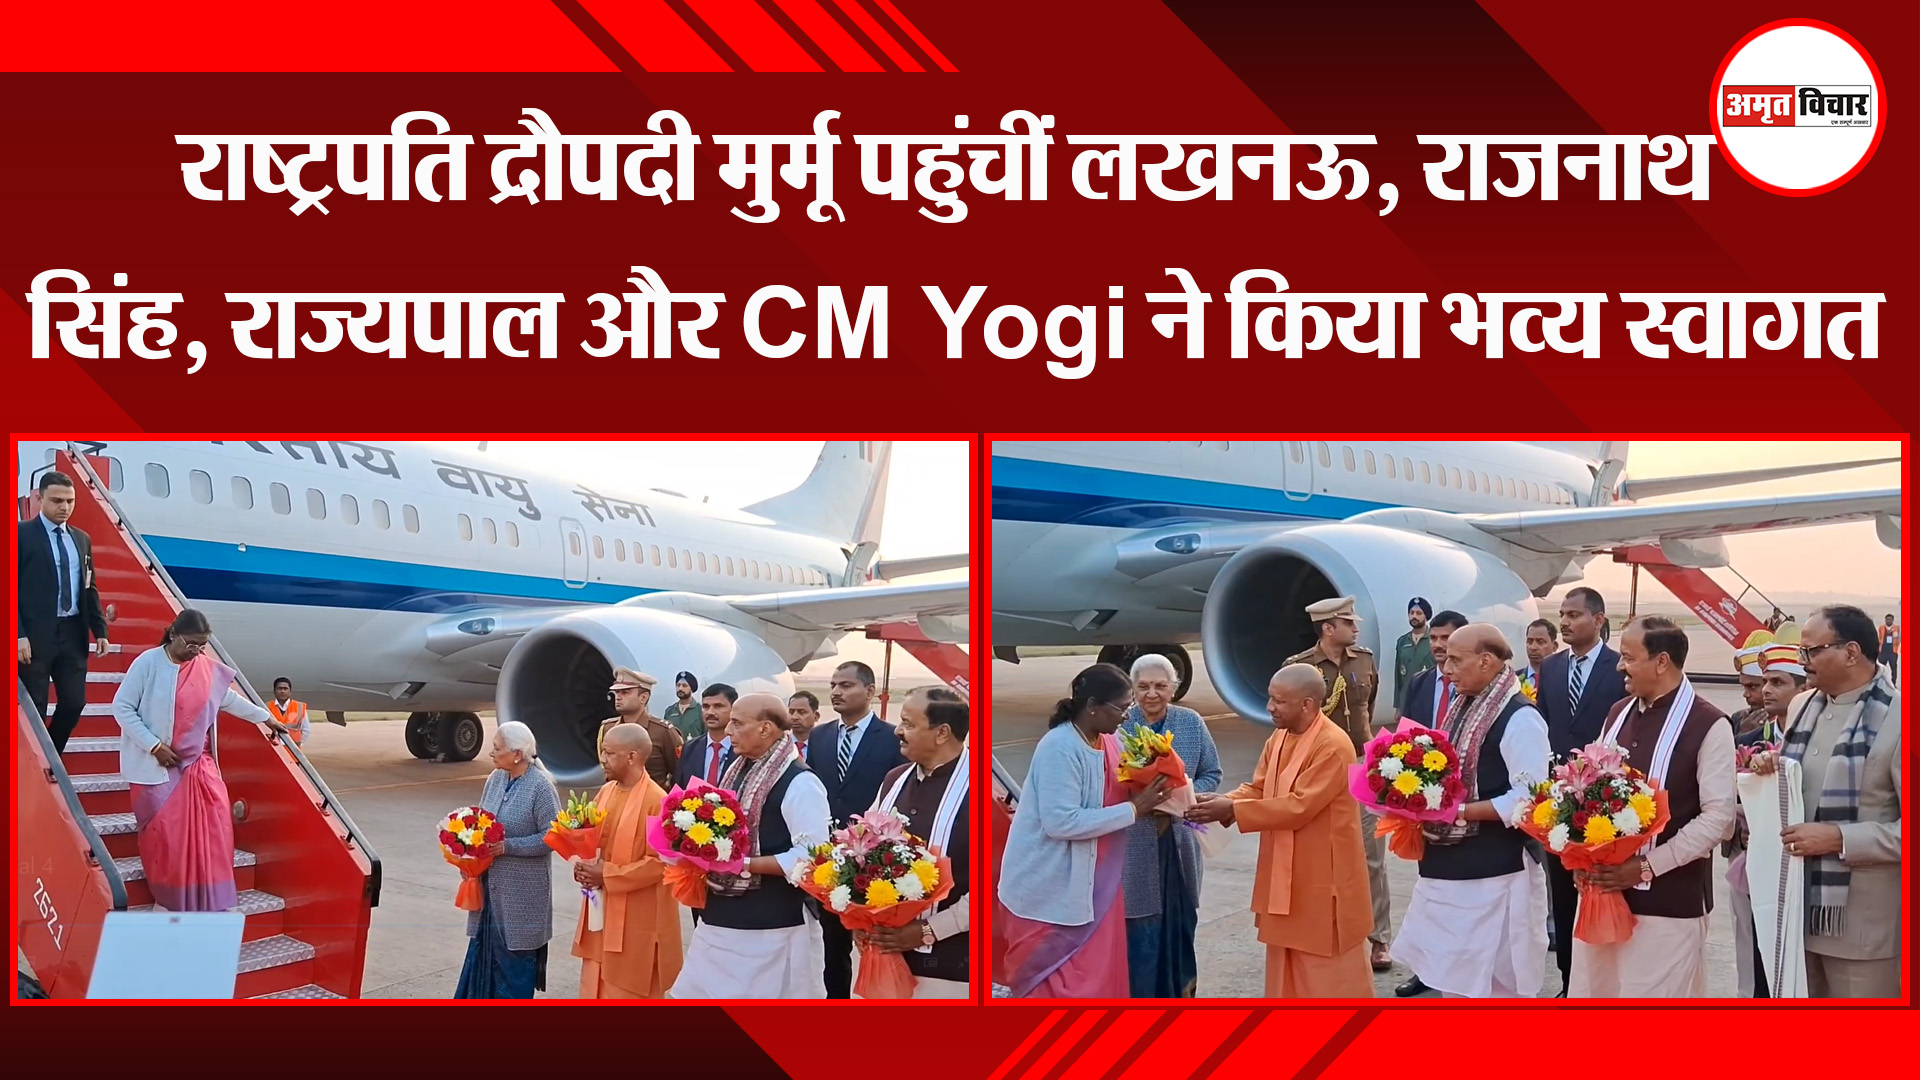 लखनऊ: राष्ट्रपति द्रौपदी मुर्मू पहुंचीं लखनऊ, राजनाथ सिंह, राज्यपाल और CM Yogi ने किया भव्य स्वागत